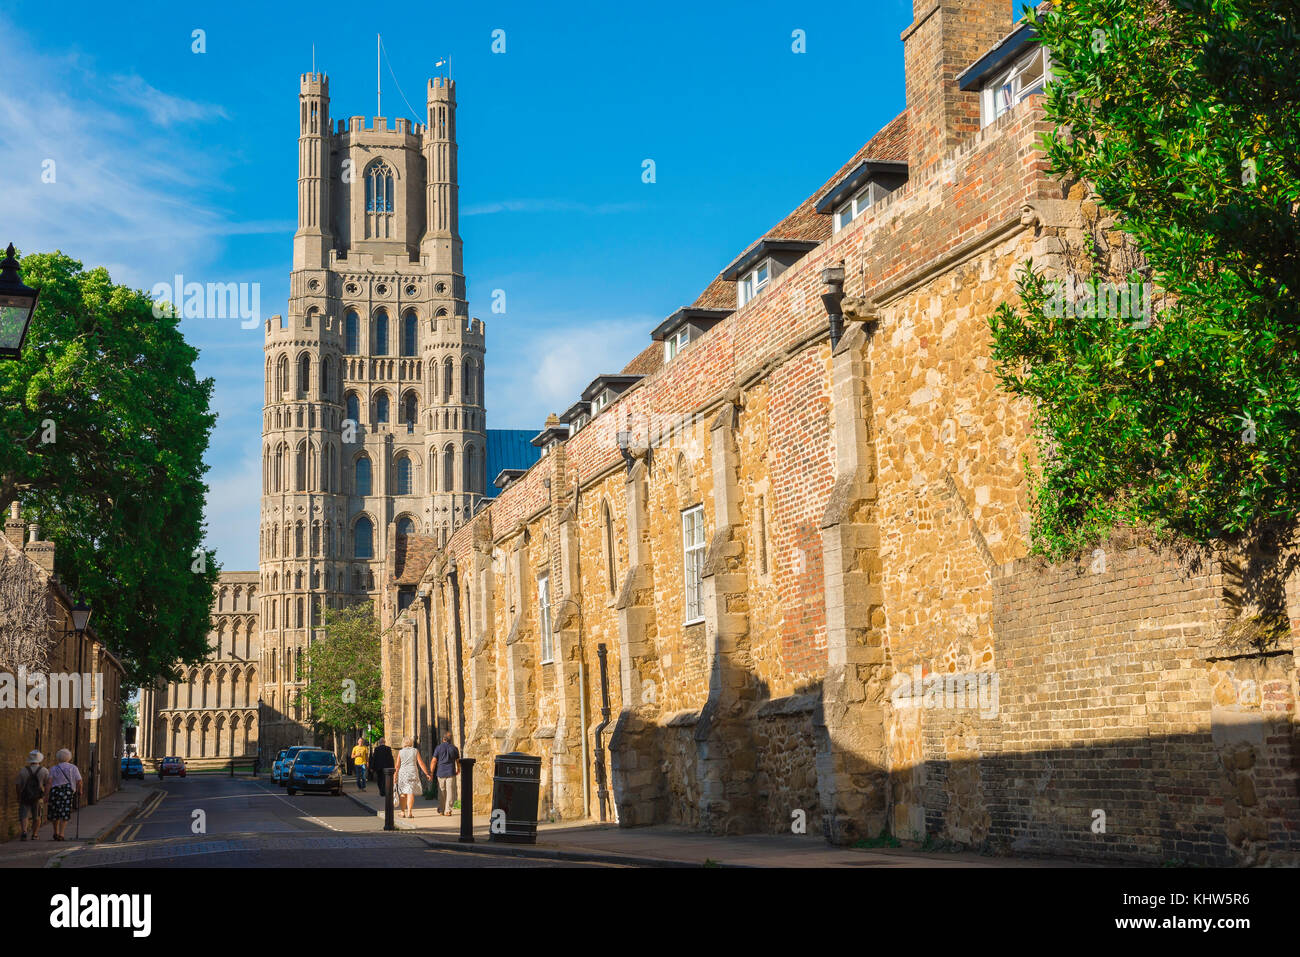 La ville de la cathédrale britannique, la tour ouest de la cathédrale d'Ely vue de la rue connue sous le nom de la galerie, Ely, Cambridgeshire, Royaume-Uni. Banque D'Images